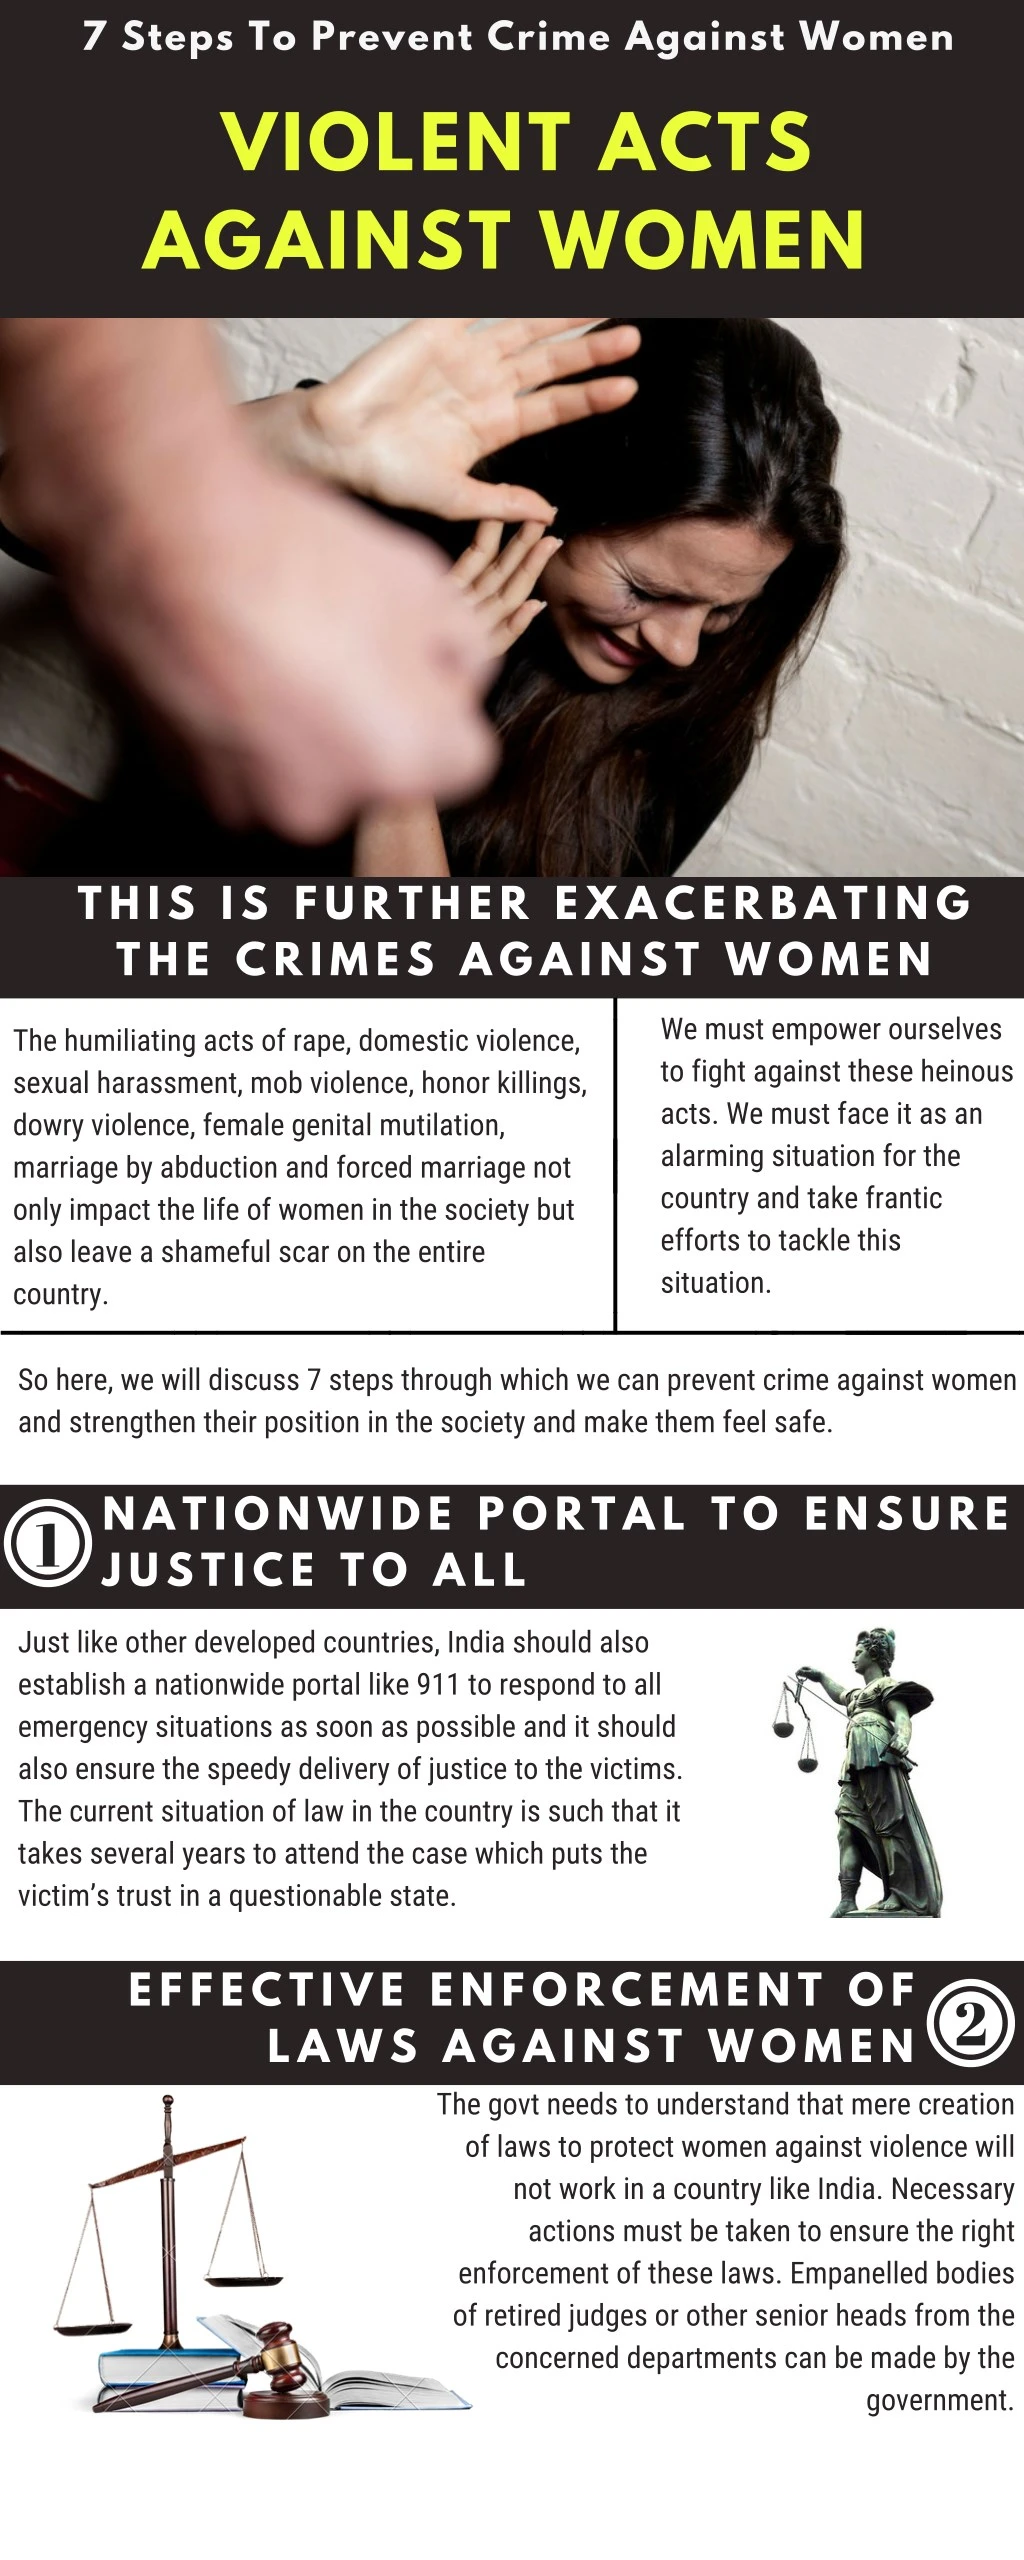 7 steps to prevent crime against women